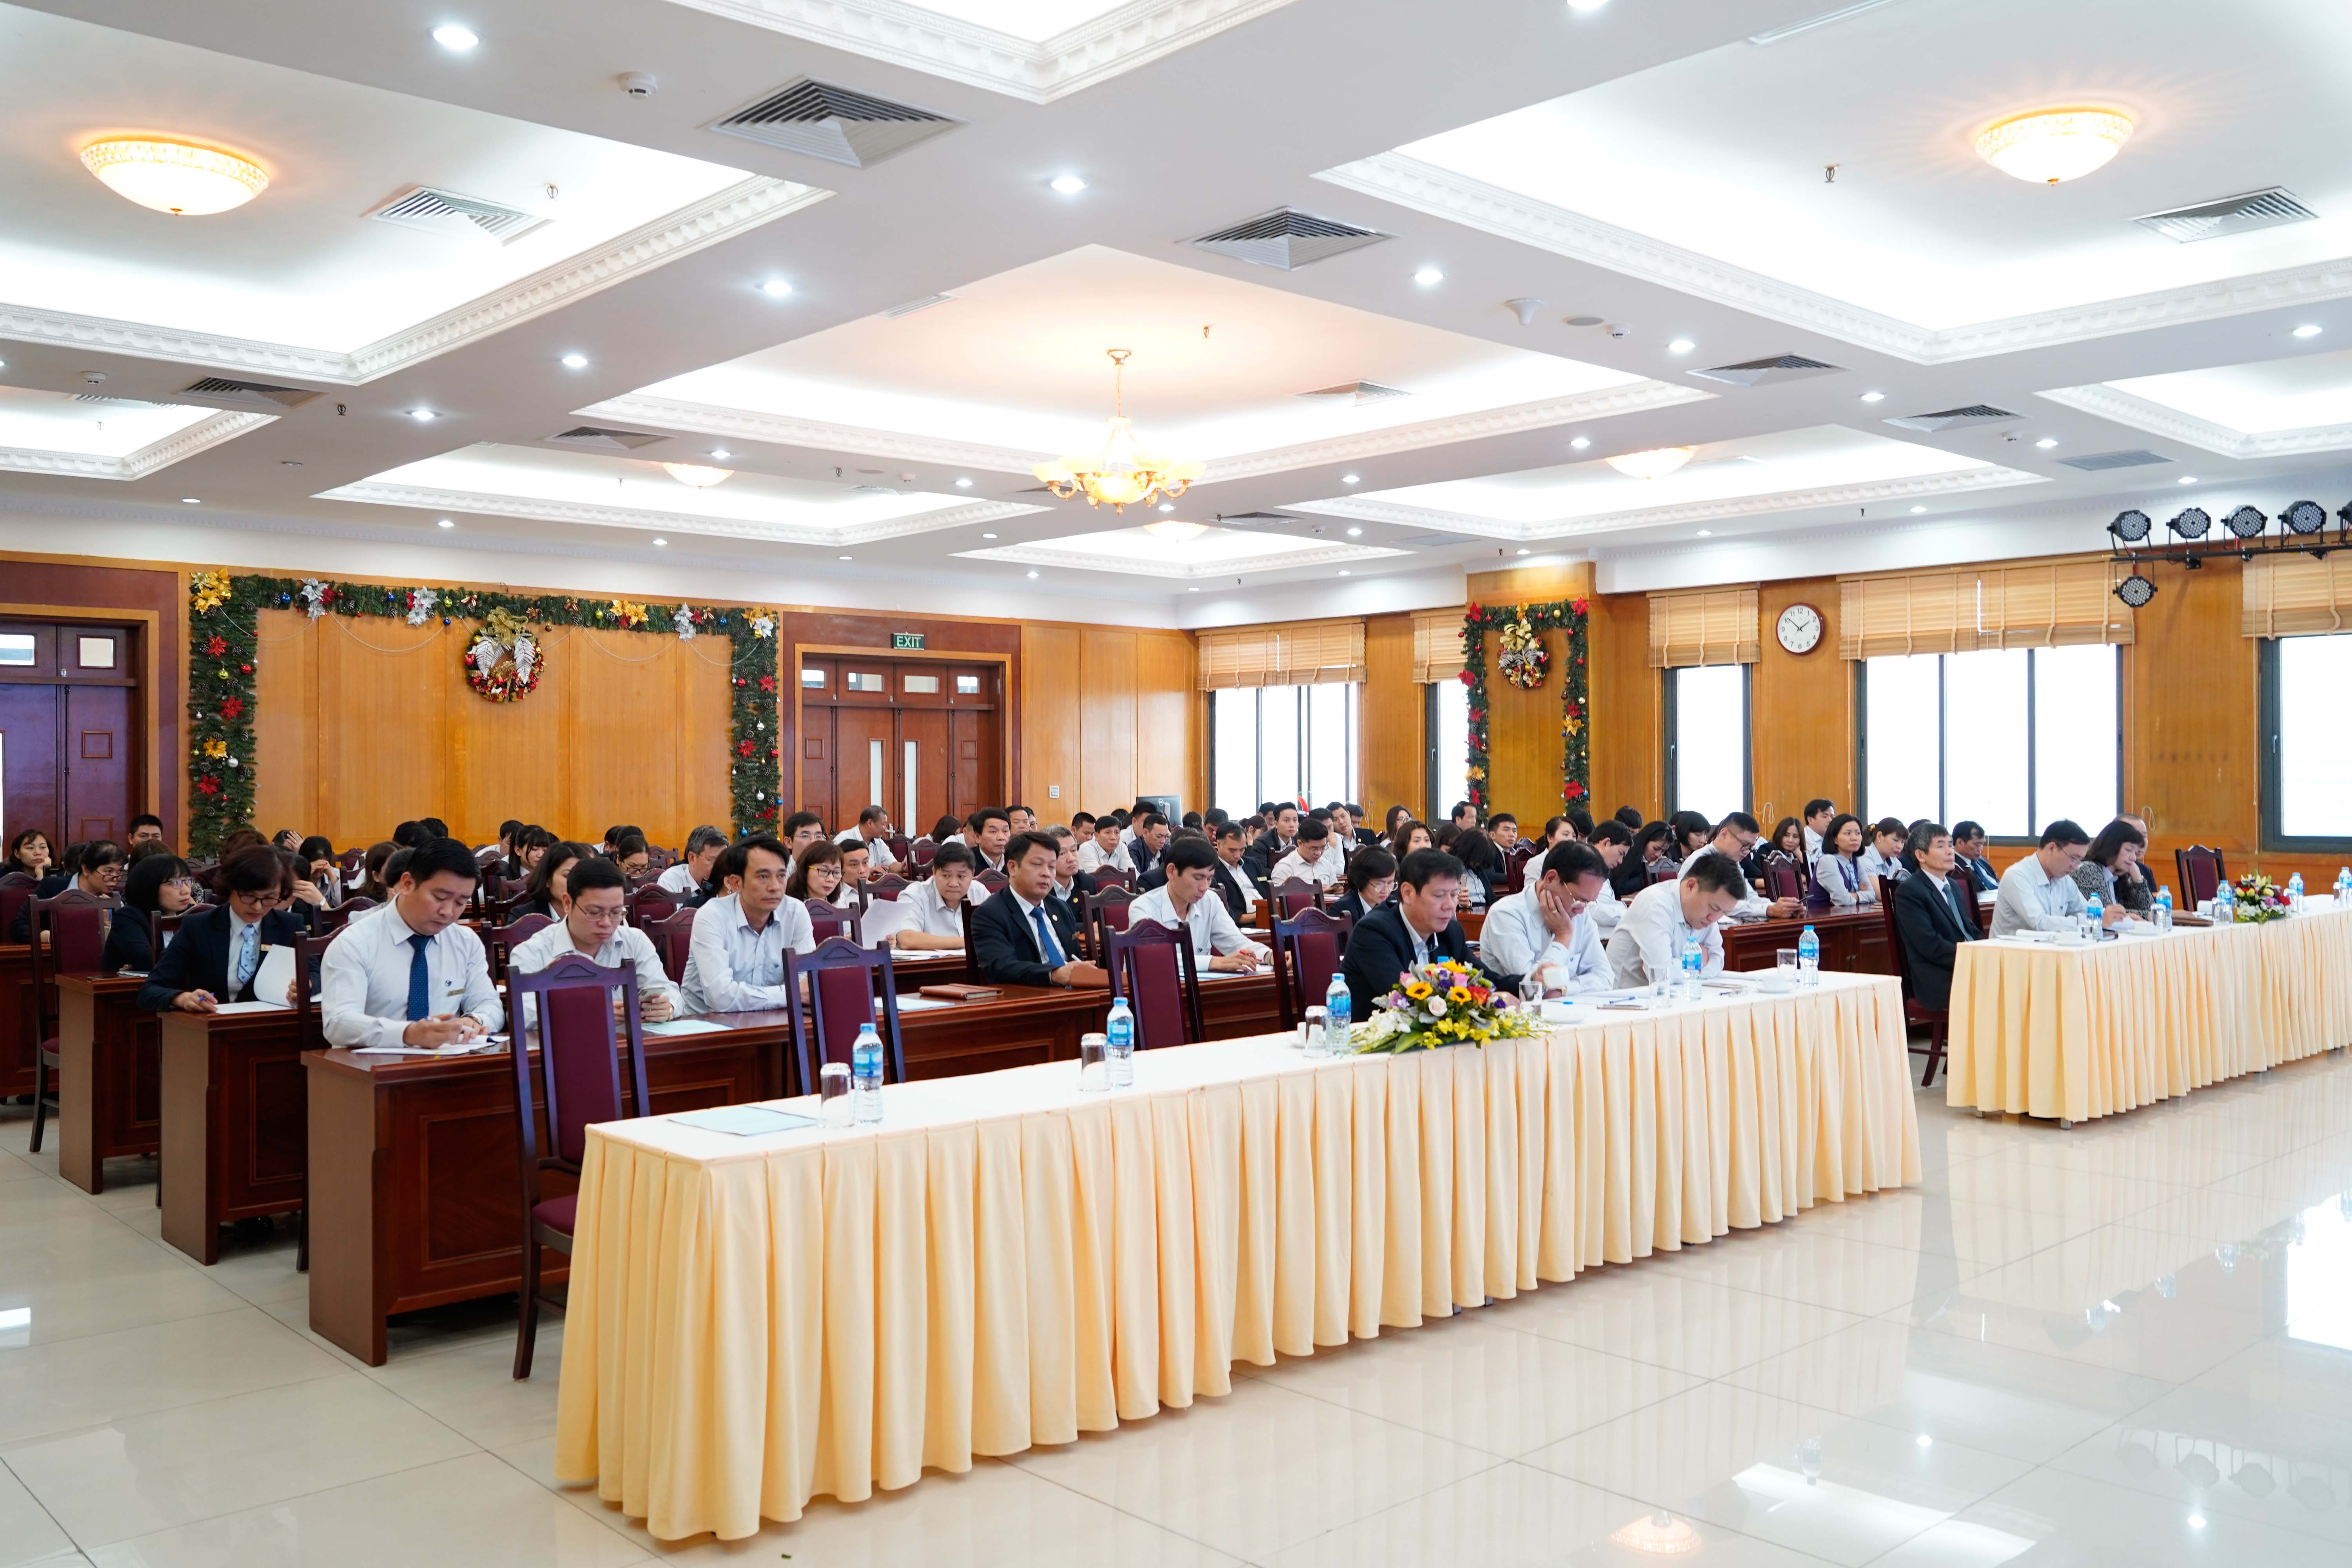 Cơ quan Tổng công ty Lâm nghiệp Việt Nam - CTCP tổ chức Hội nghị người lao động năm 2019